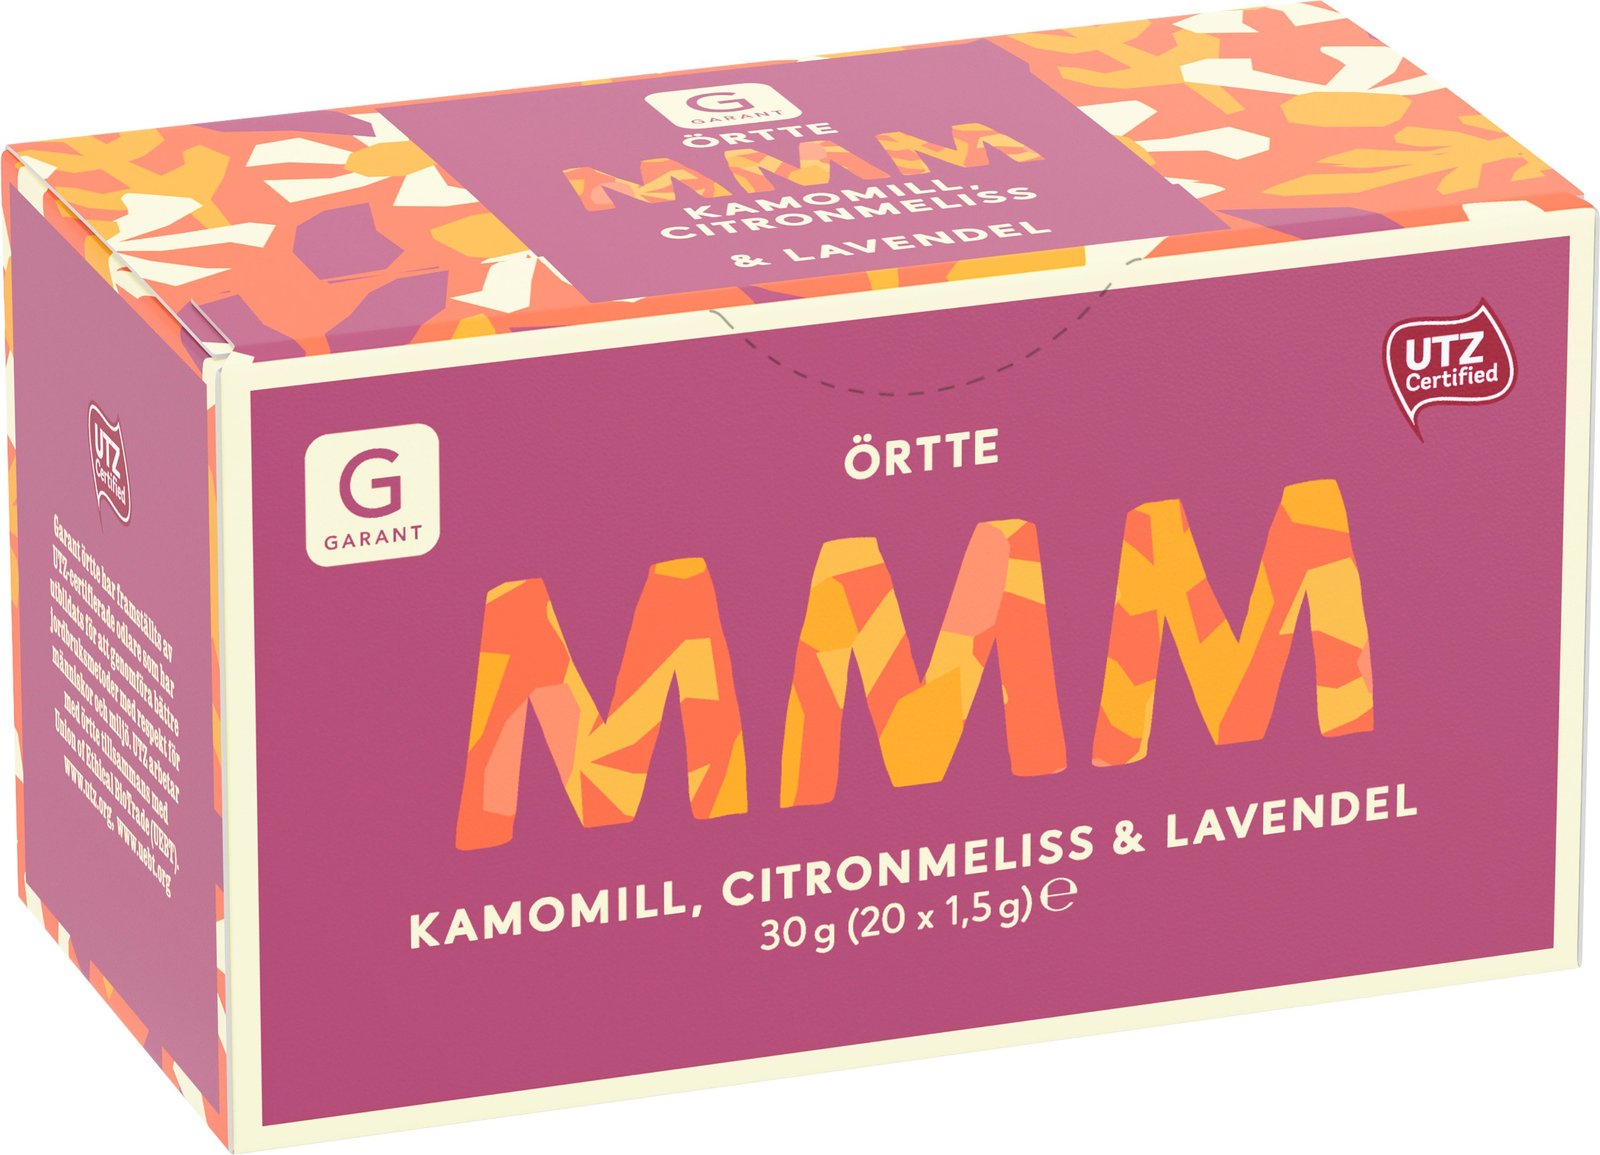 Garant Örtte Kamomill & Lavendel 30 g